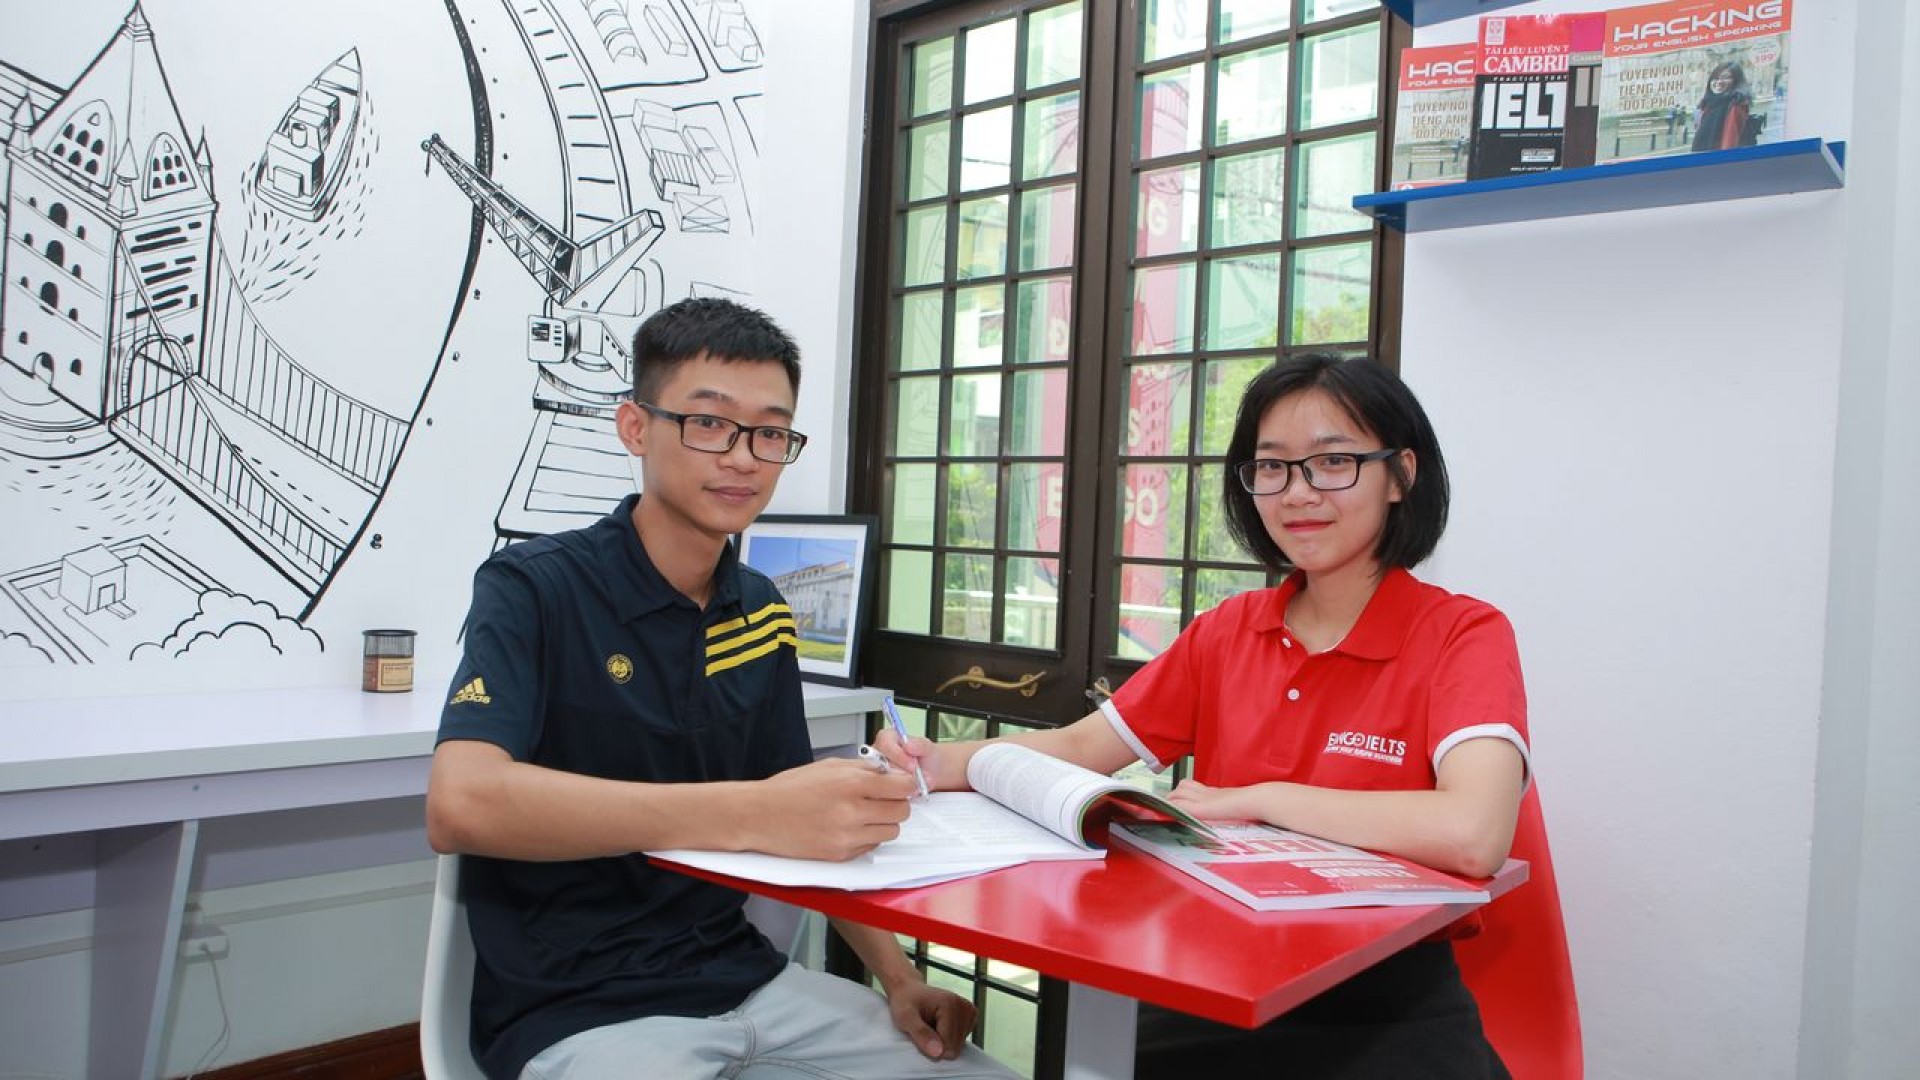 Elingo - trung tâm luyện thi IELTS duy nhất tại Hà Nội bảo hành kết quả IELTS đến 03 năm